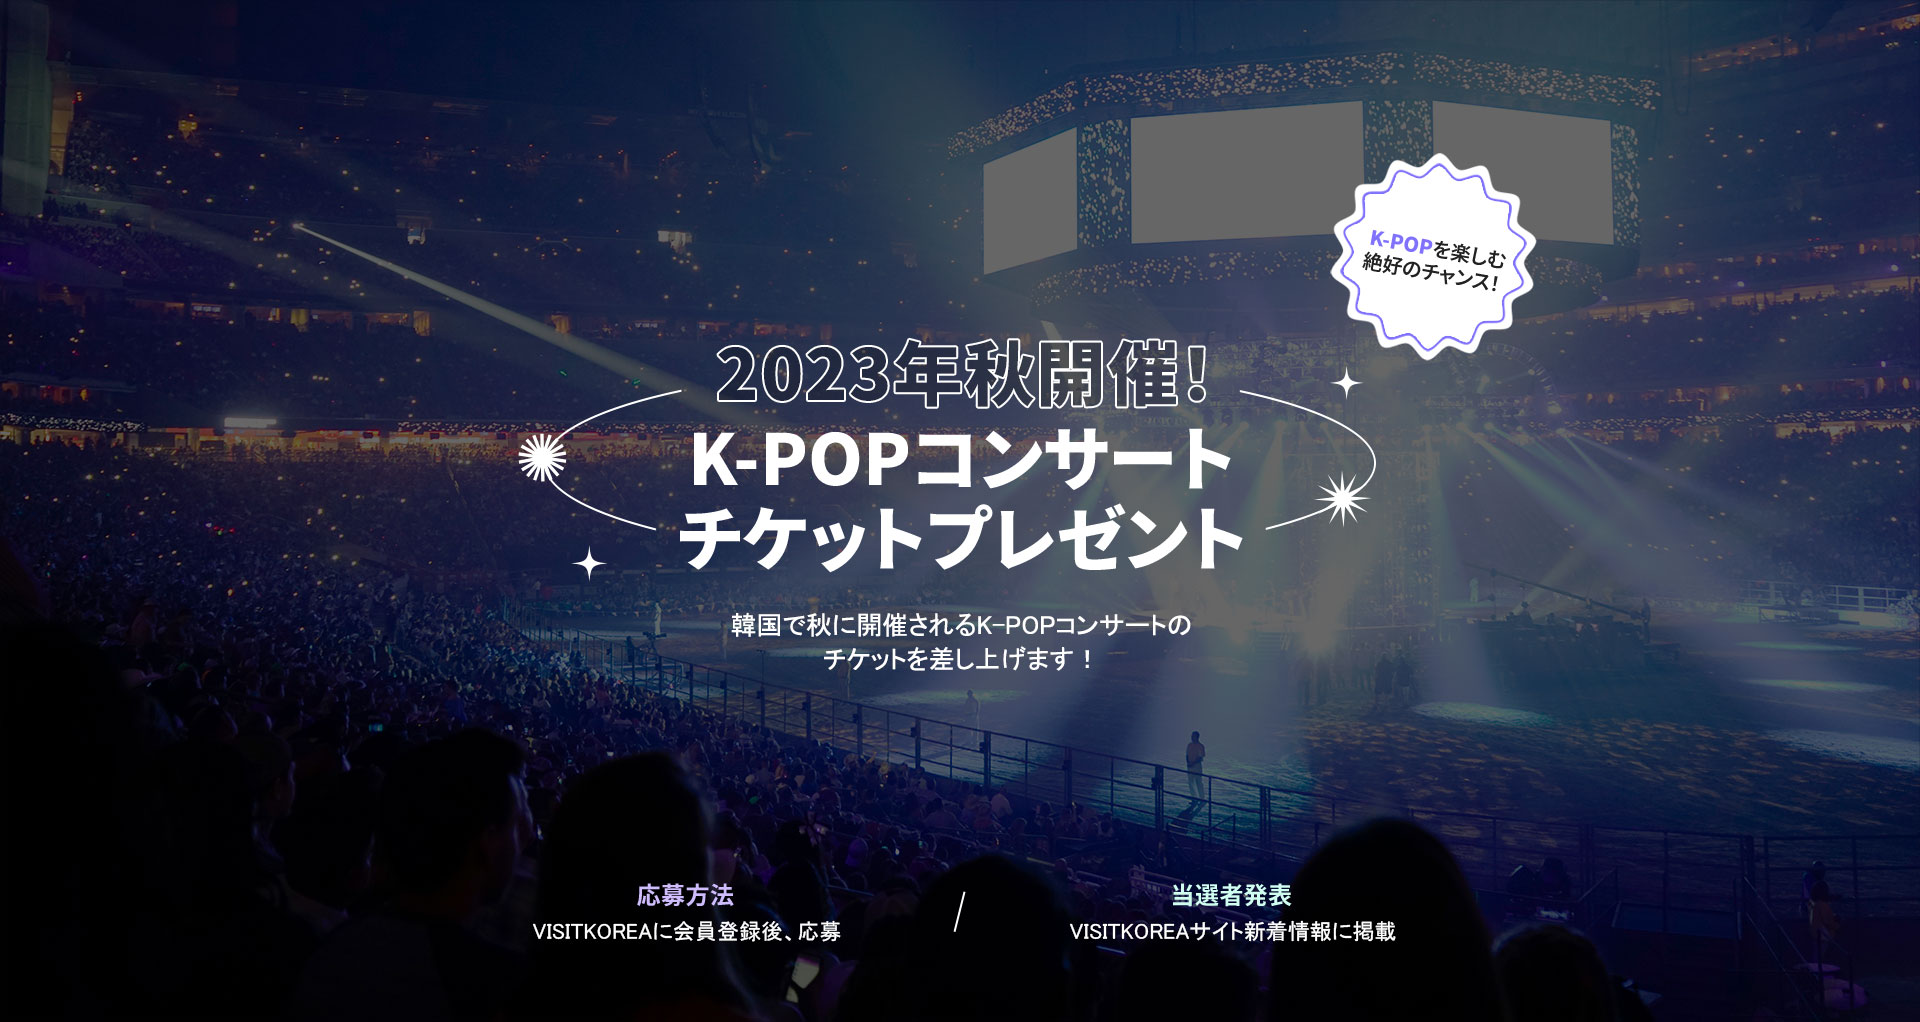 2023年秋開催！K-POPコンサートチケットプレゼント韓国で秋に開催されるK-POPコンサートの チケットを差し上げます！応募方法VISITKOREAに会員登録後、応募当選者発表VISITKOREAサイト新着情報に掲載